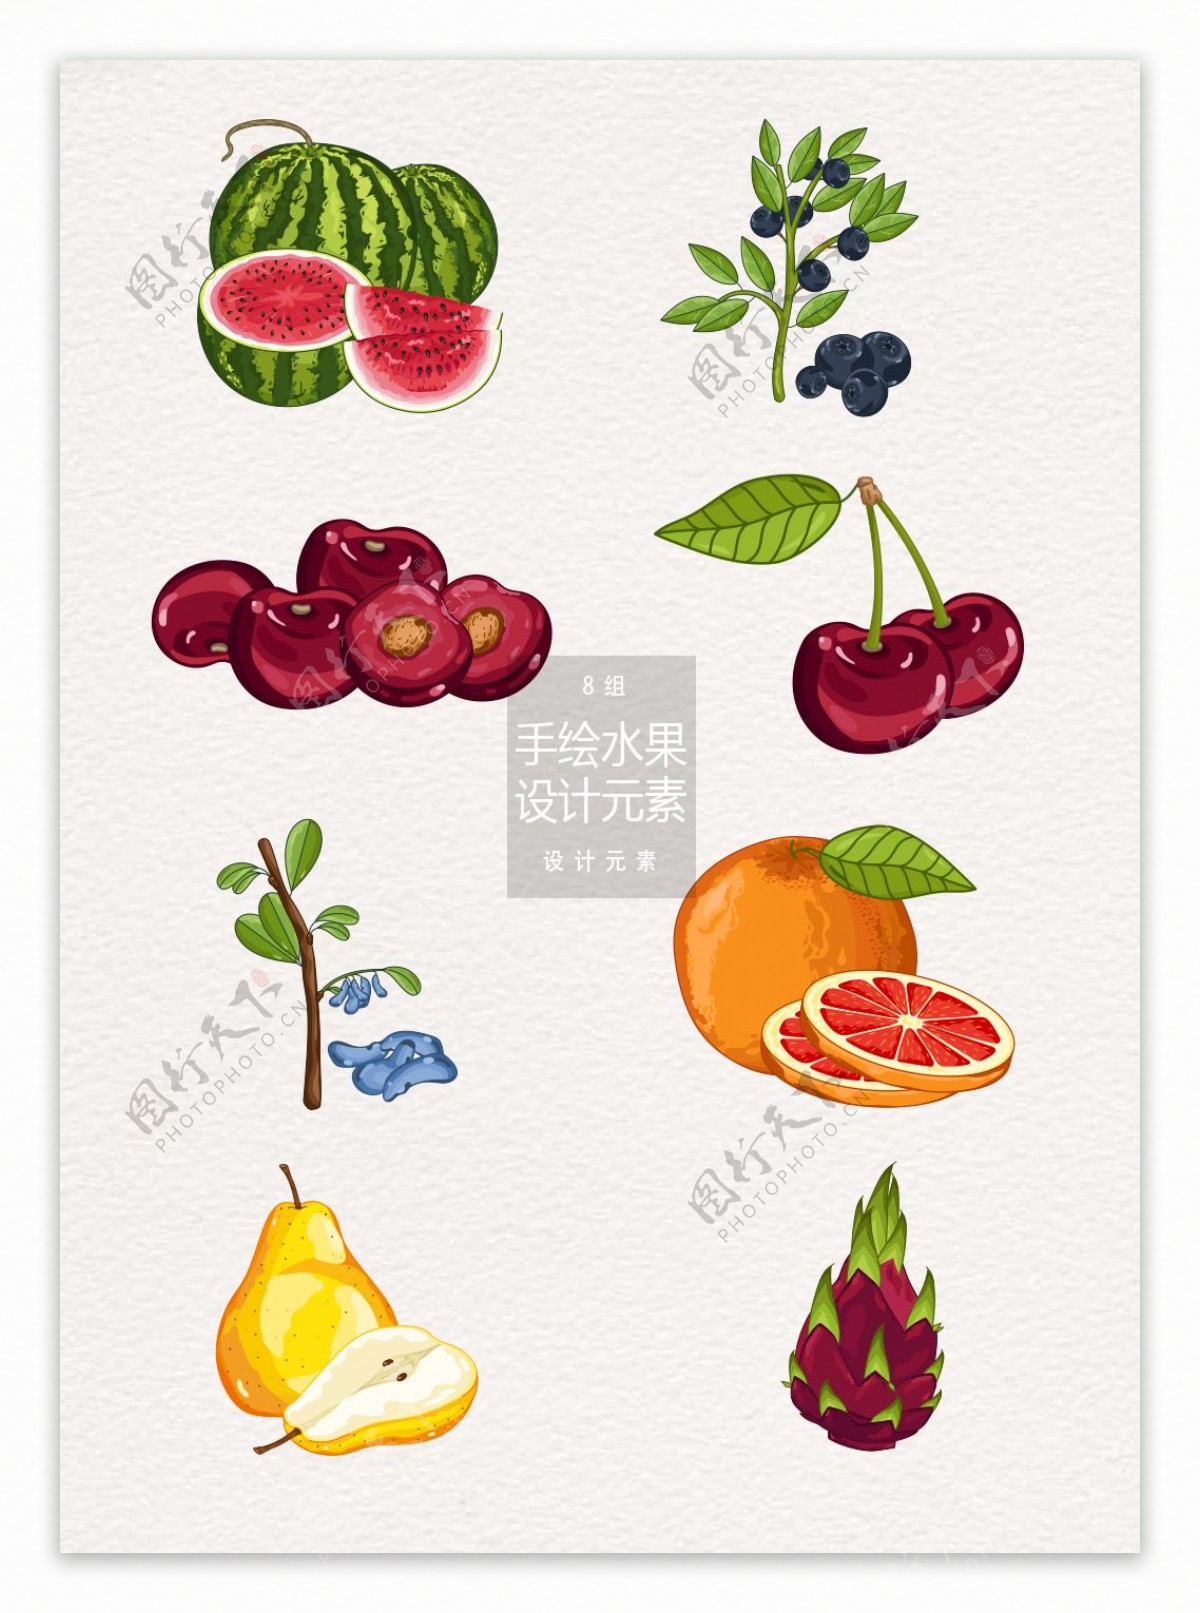 8款手绘水果设计元素